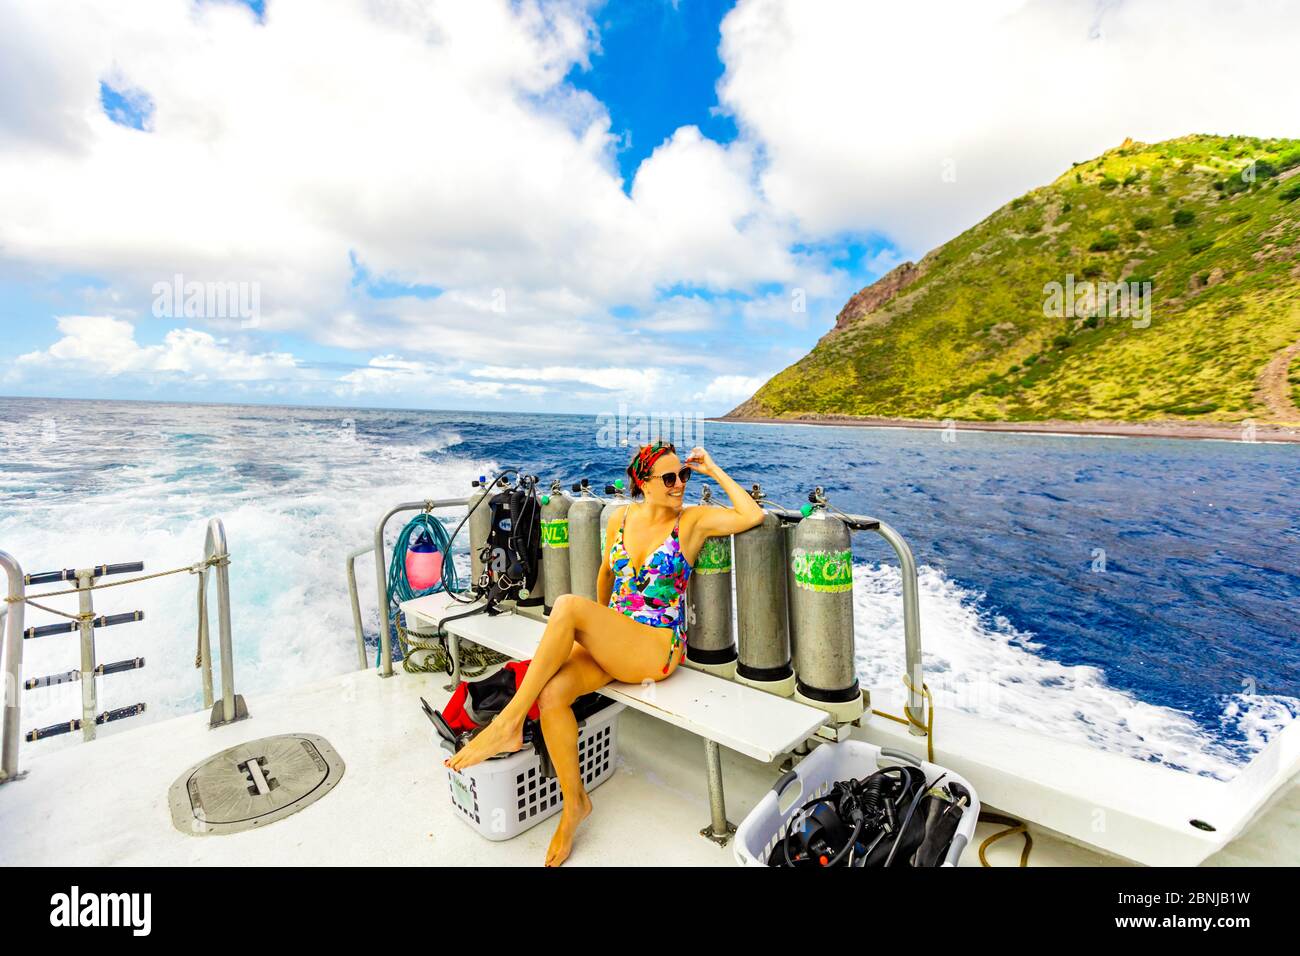 Mujer que toma las vistas desde un barco en el agua en la isla Saba, Antillas Holandesas, Antillas Occidentales, Caribe, Centroamérica Foto de stock